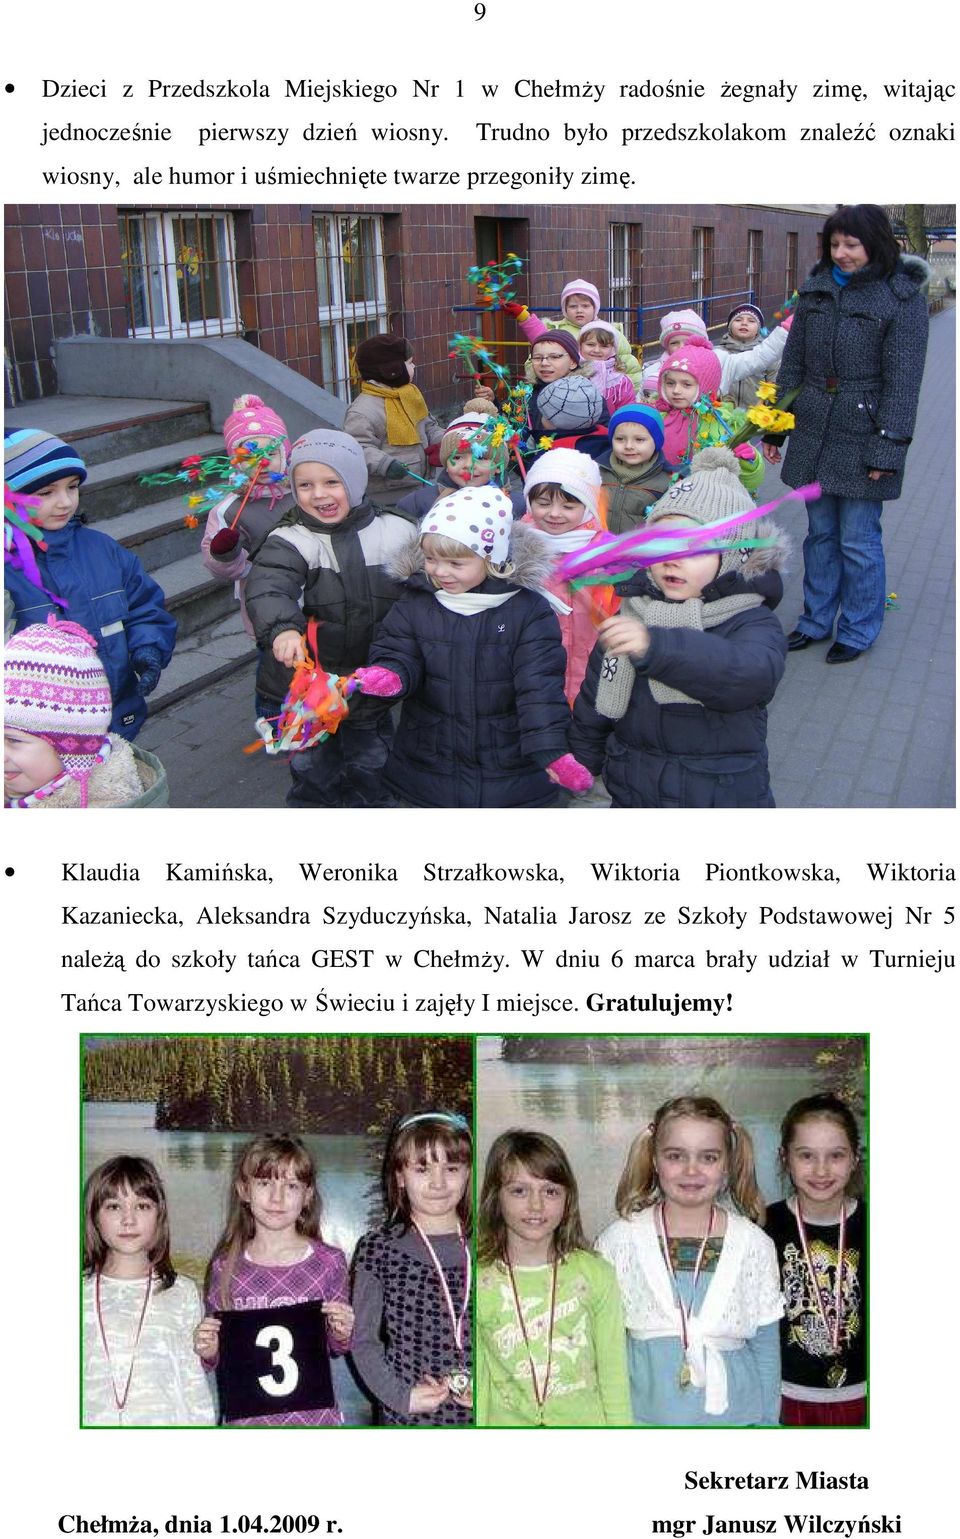 Klaudia Kamińska, Weronika Strzałkowska, Wiktoria Piontkowska, Wiktoria Kazaniecka, Aleksandra Szyduczyńska, Natalia Jarosz ze Szkoły